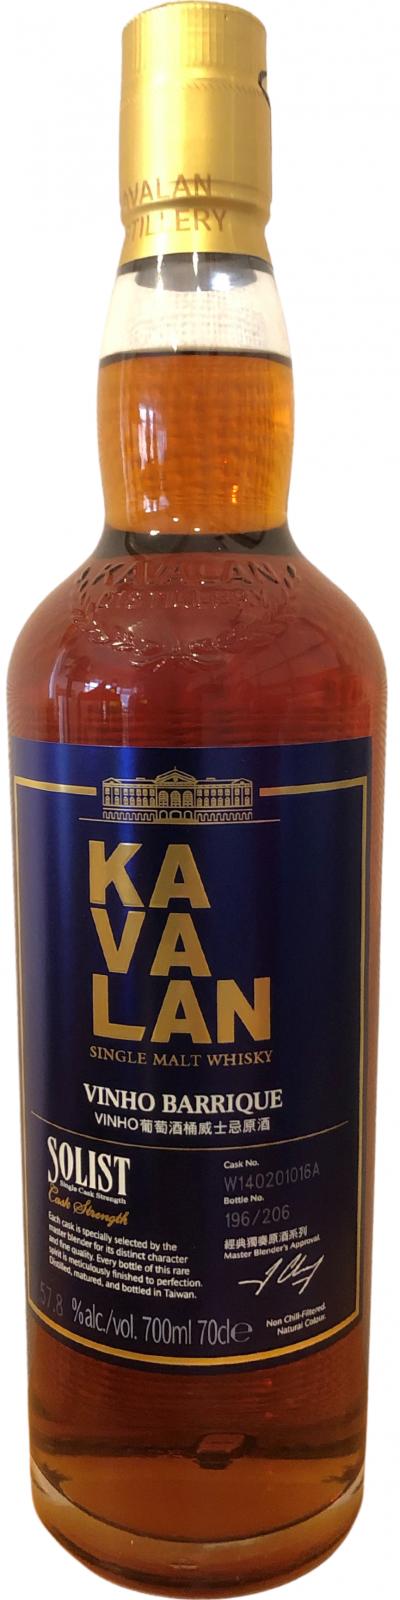 Kavalan Solist wine Barrique W140201016A 57.8% 700ml